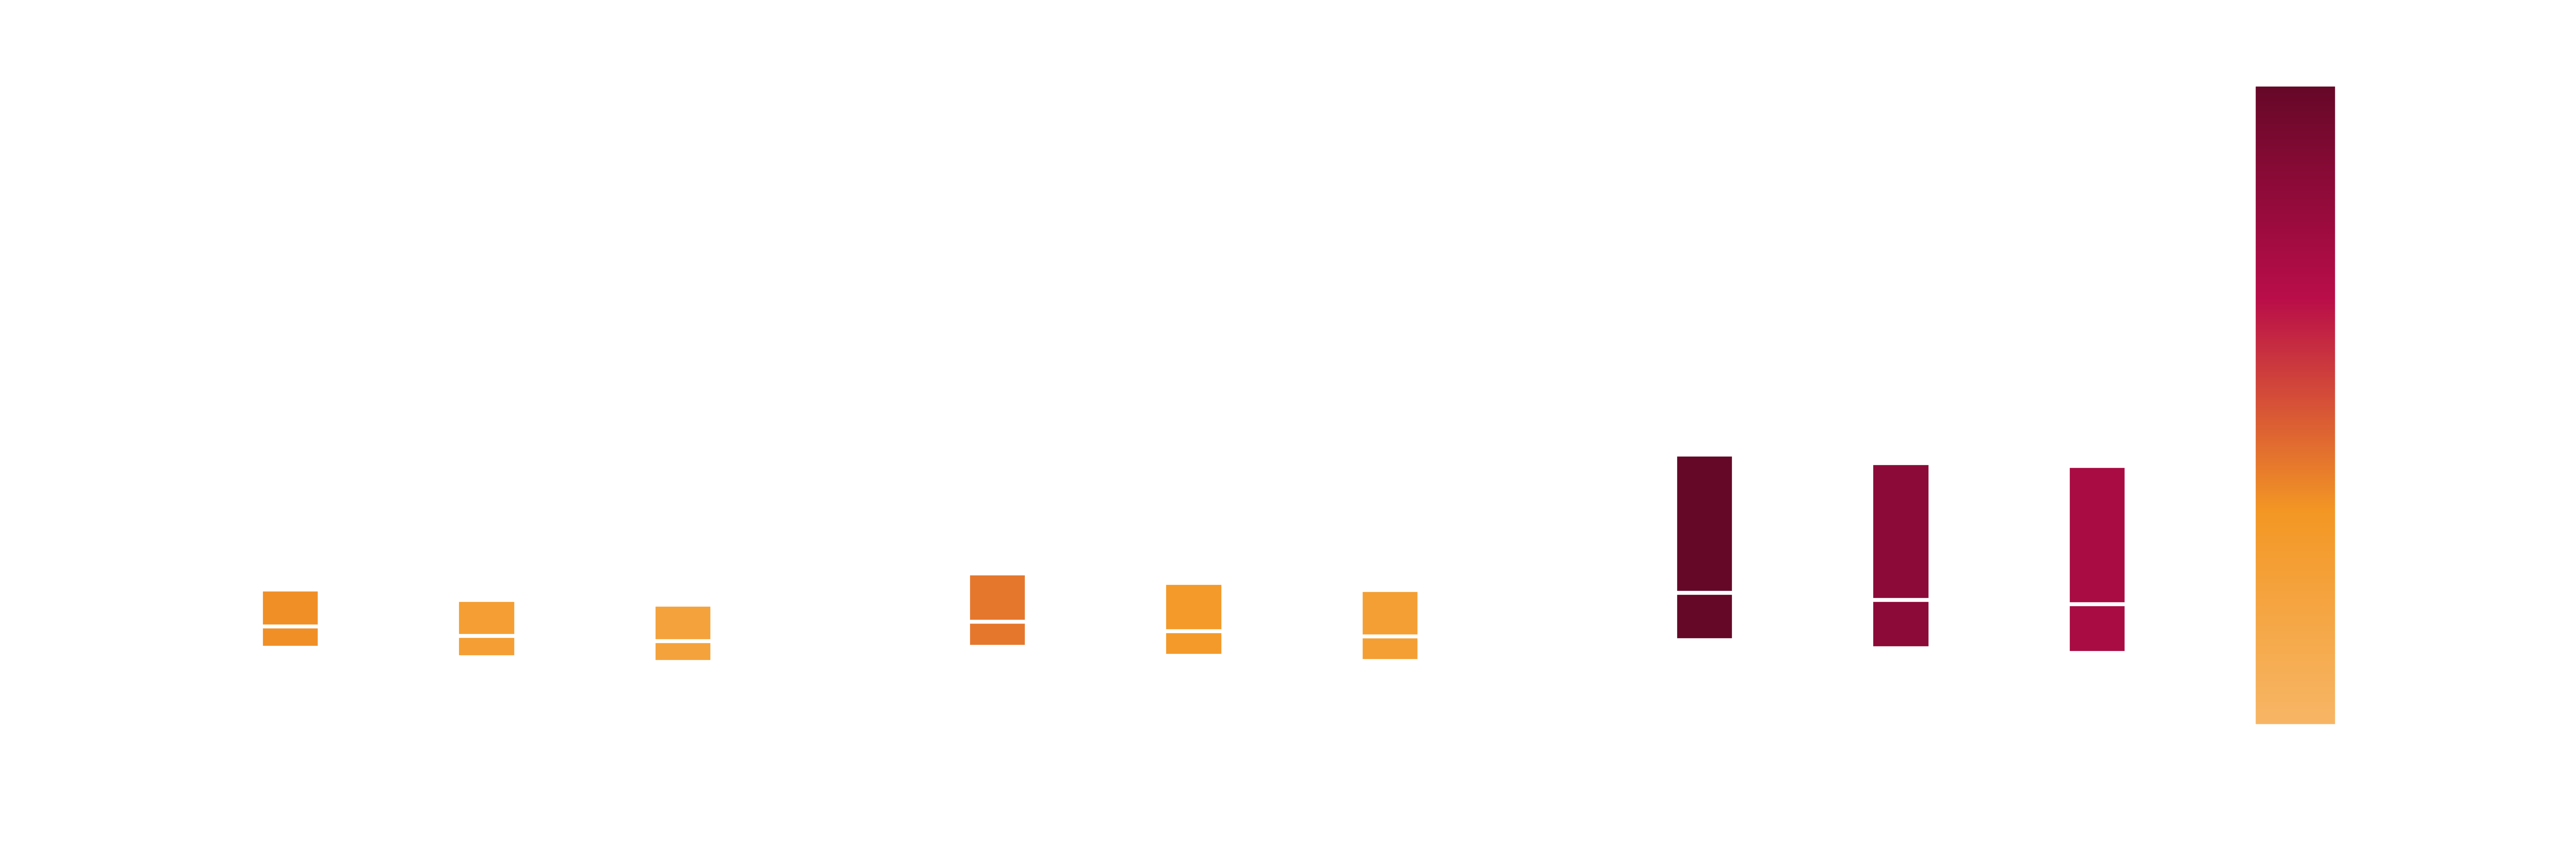 mass-loss